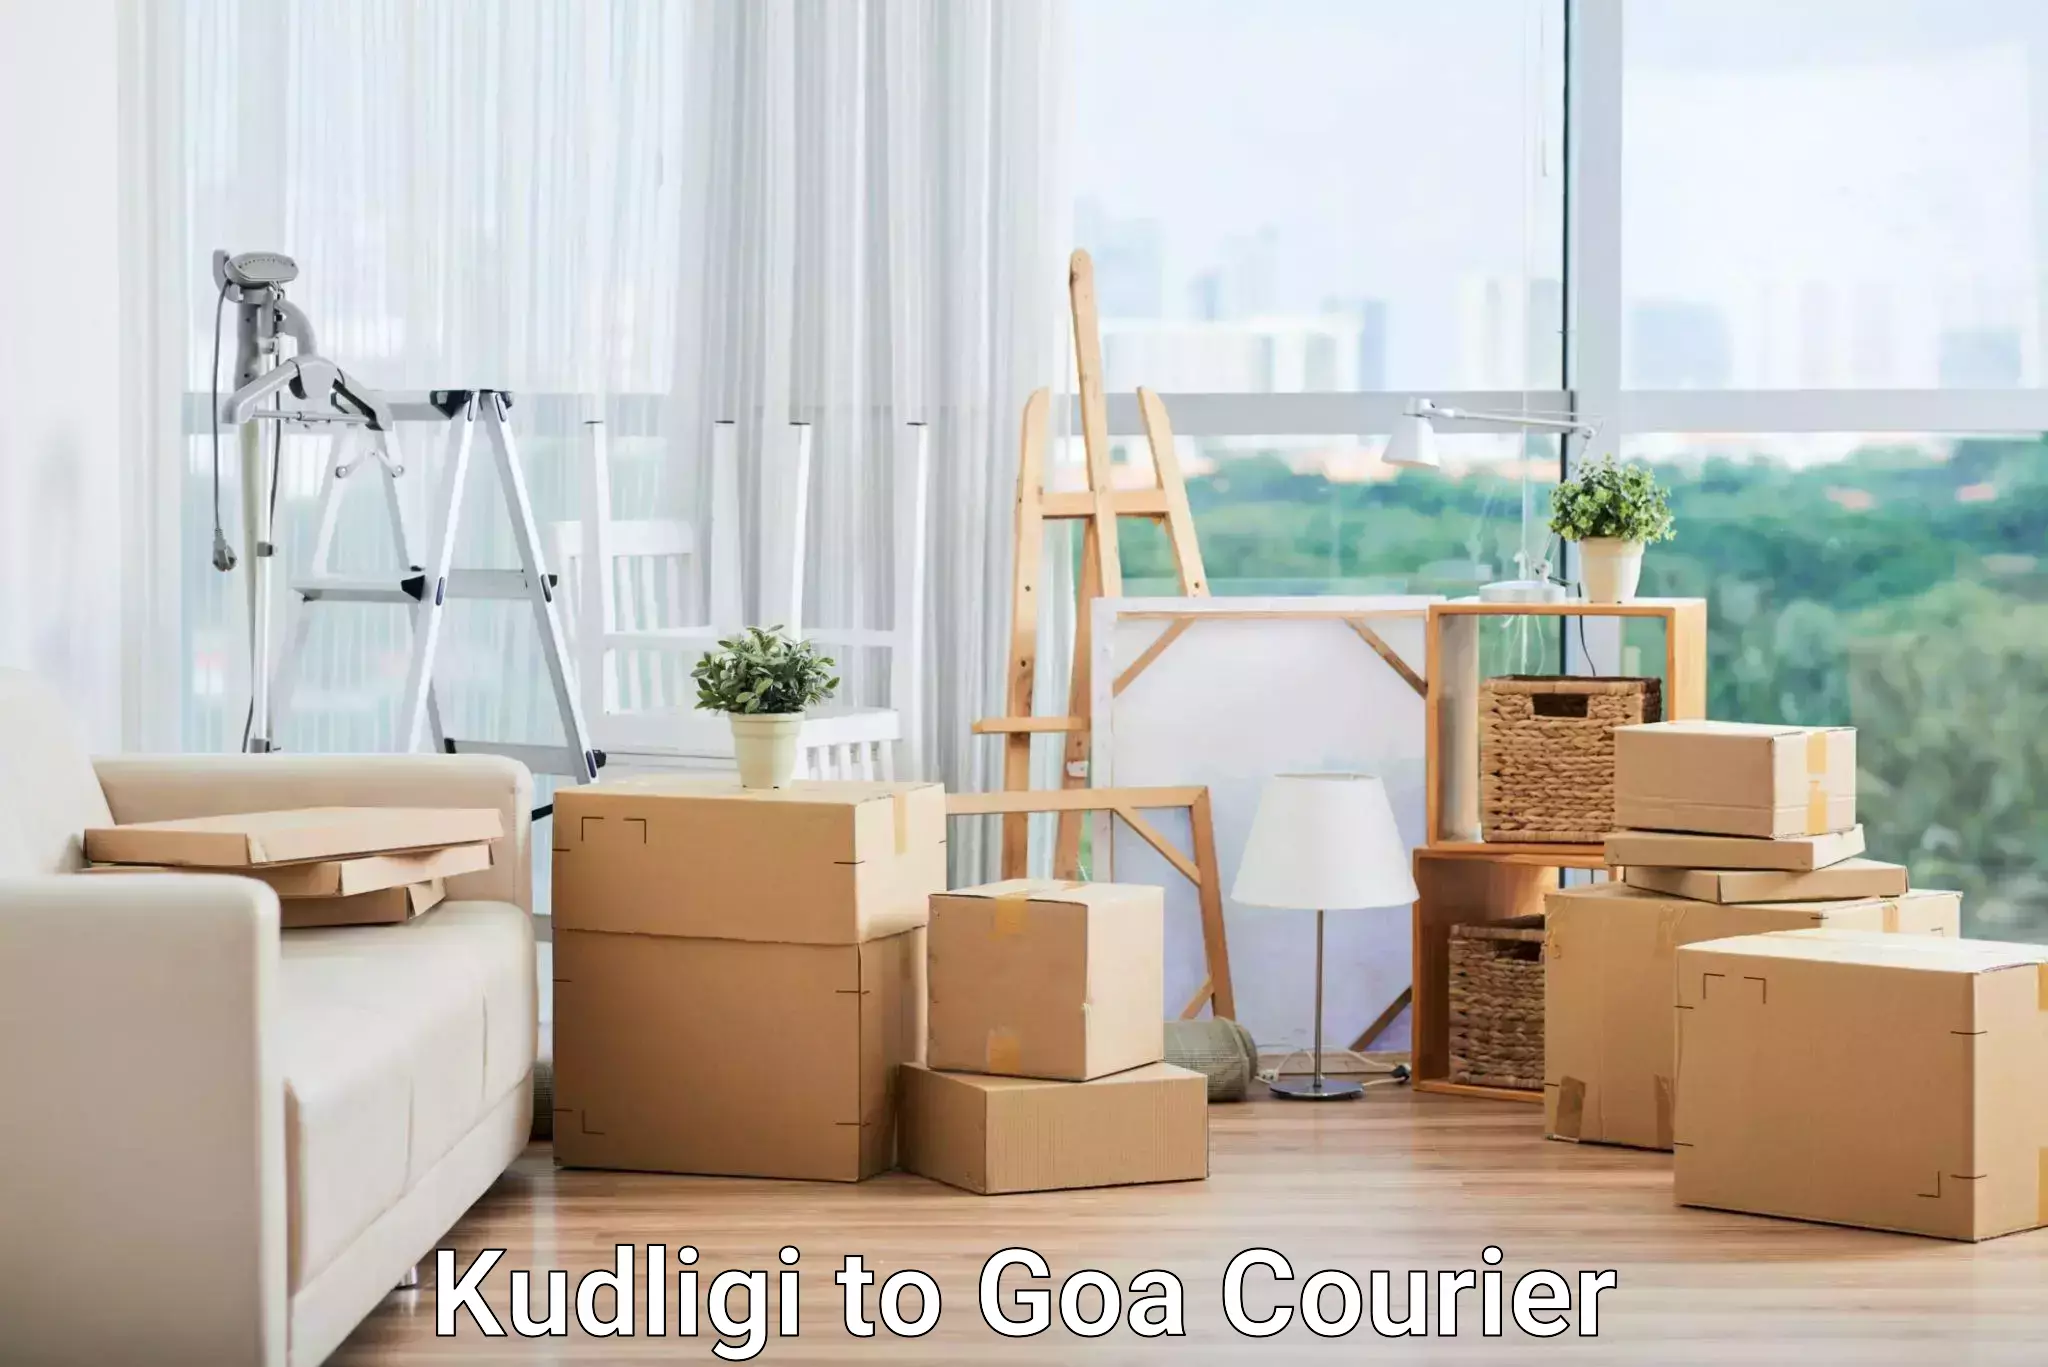 Cargo courier service Kudligi to Goa